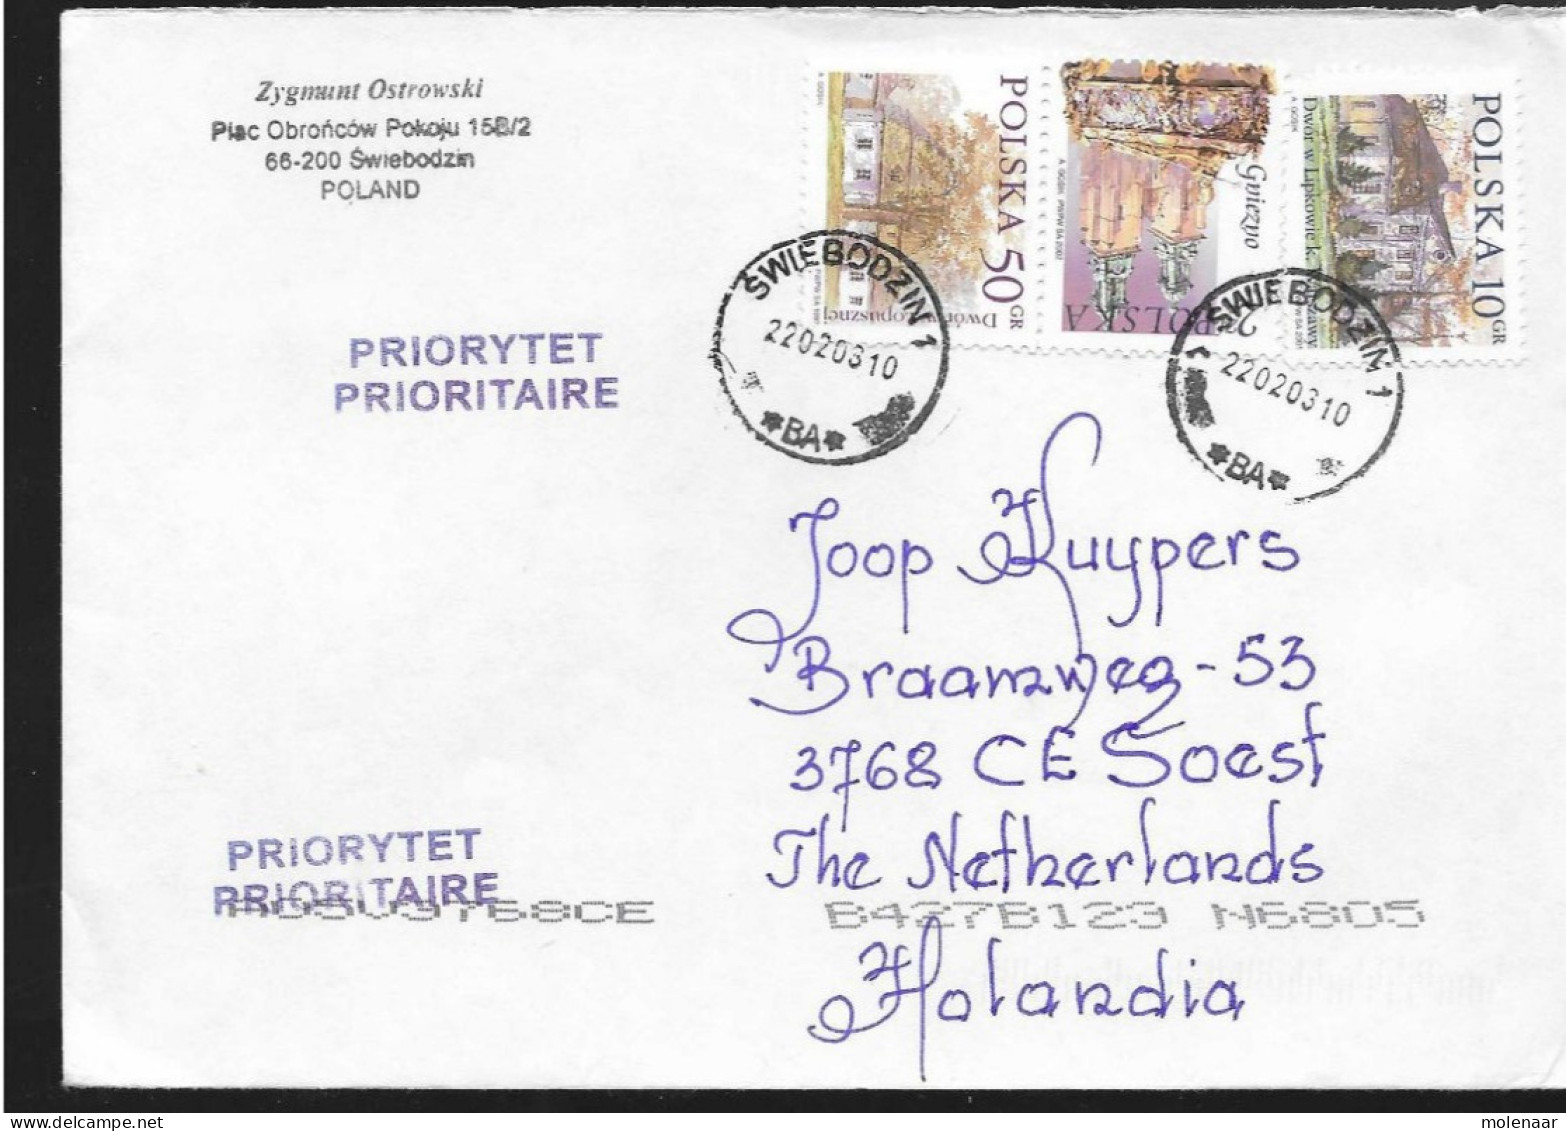 Postzegels > Europa > Polen > 1944-.... Republiek > 2001-10 >brief Ui 2003 Met 3 Postzegels (17119)17118 - Briefe U. Dokumente